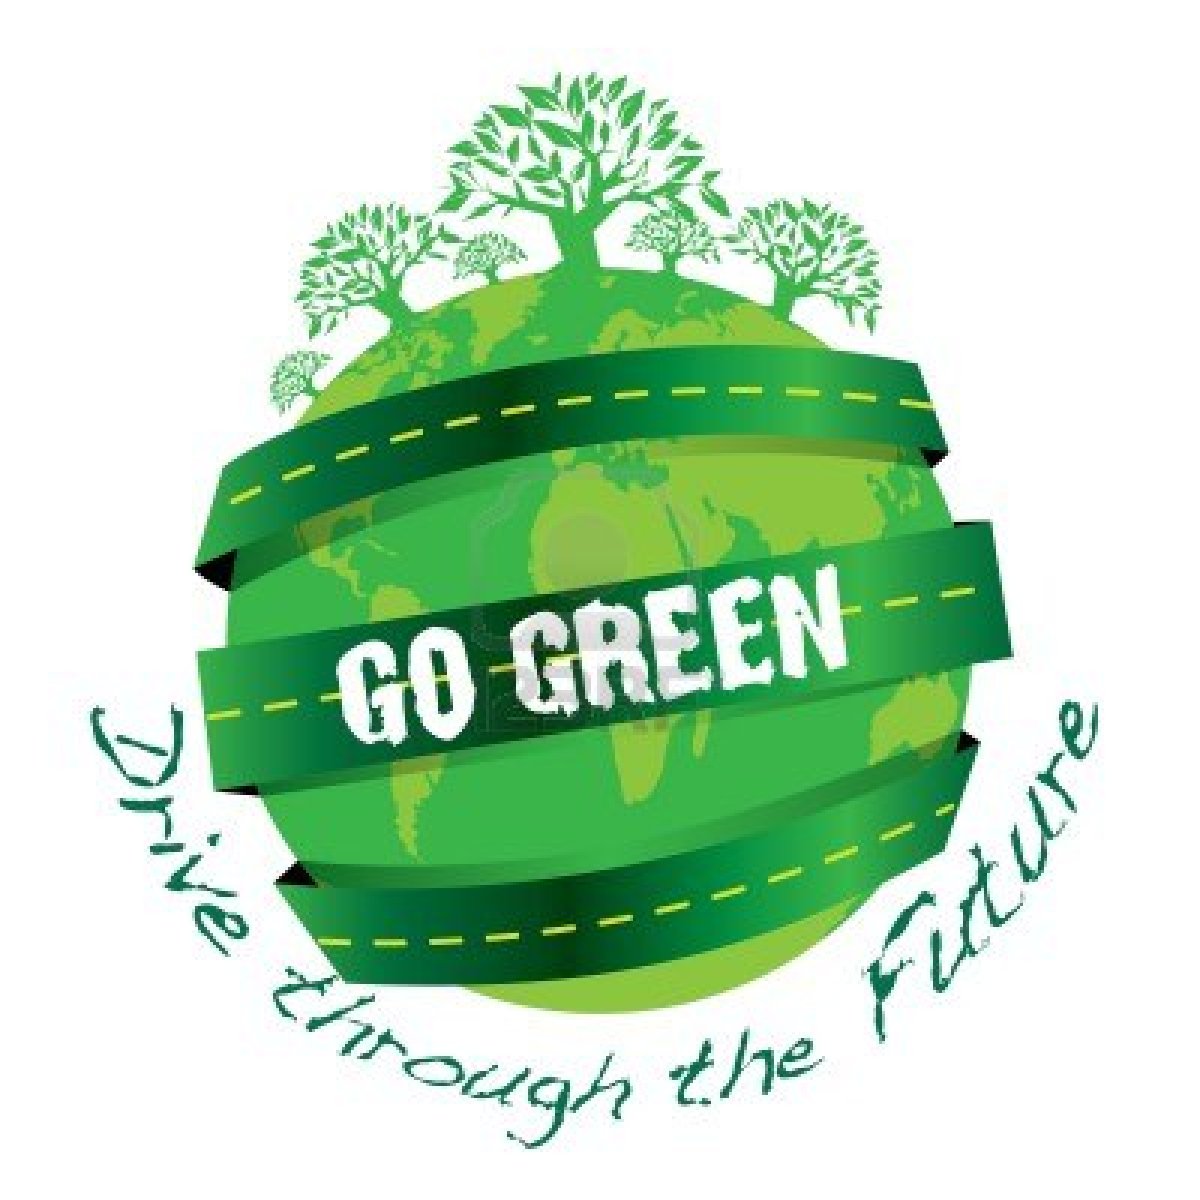 Triquetra: 'Go Green', Green = Money / Earth??